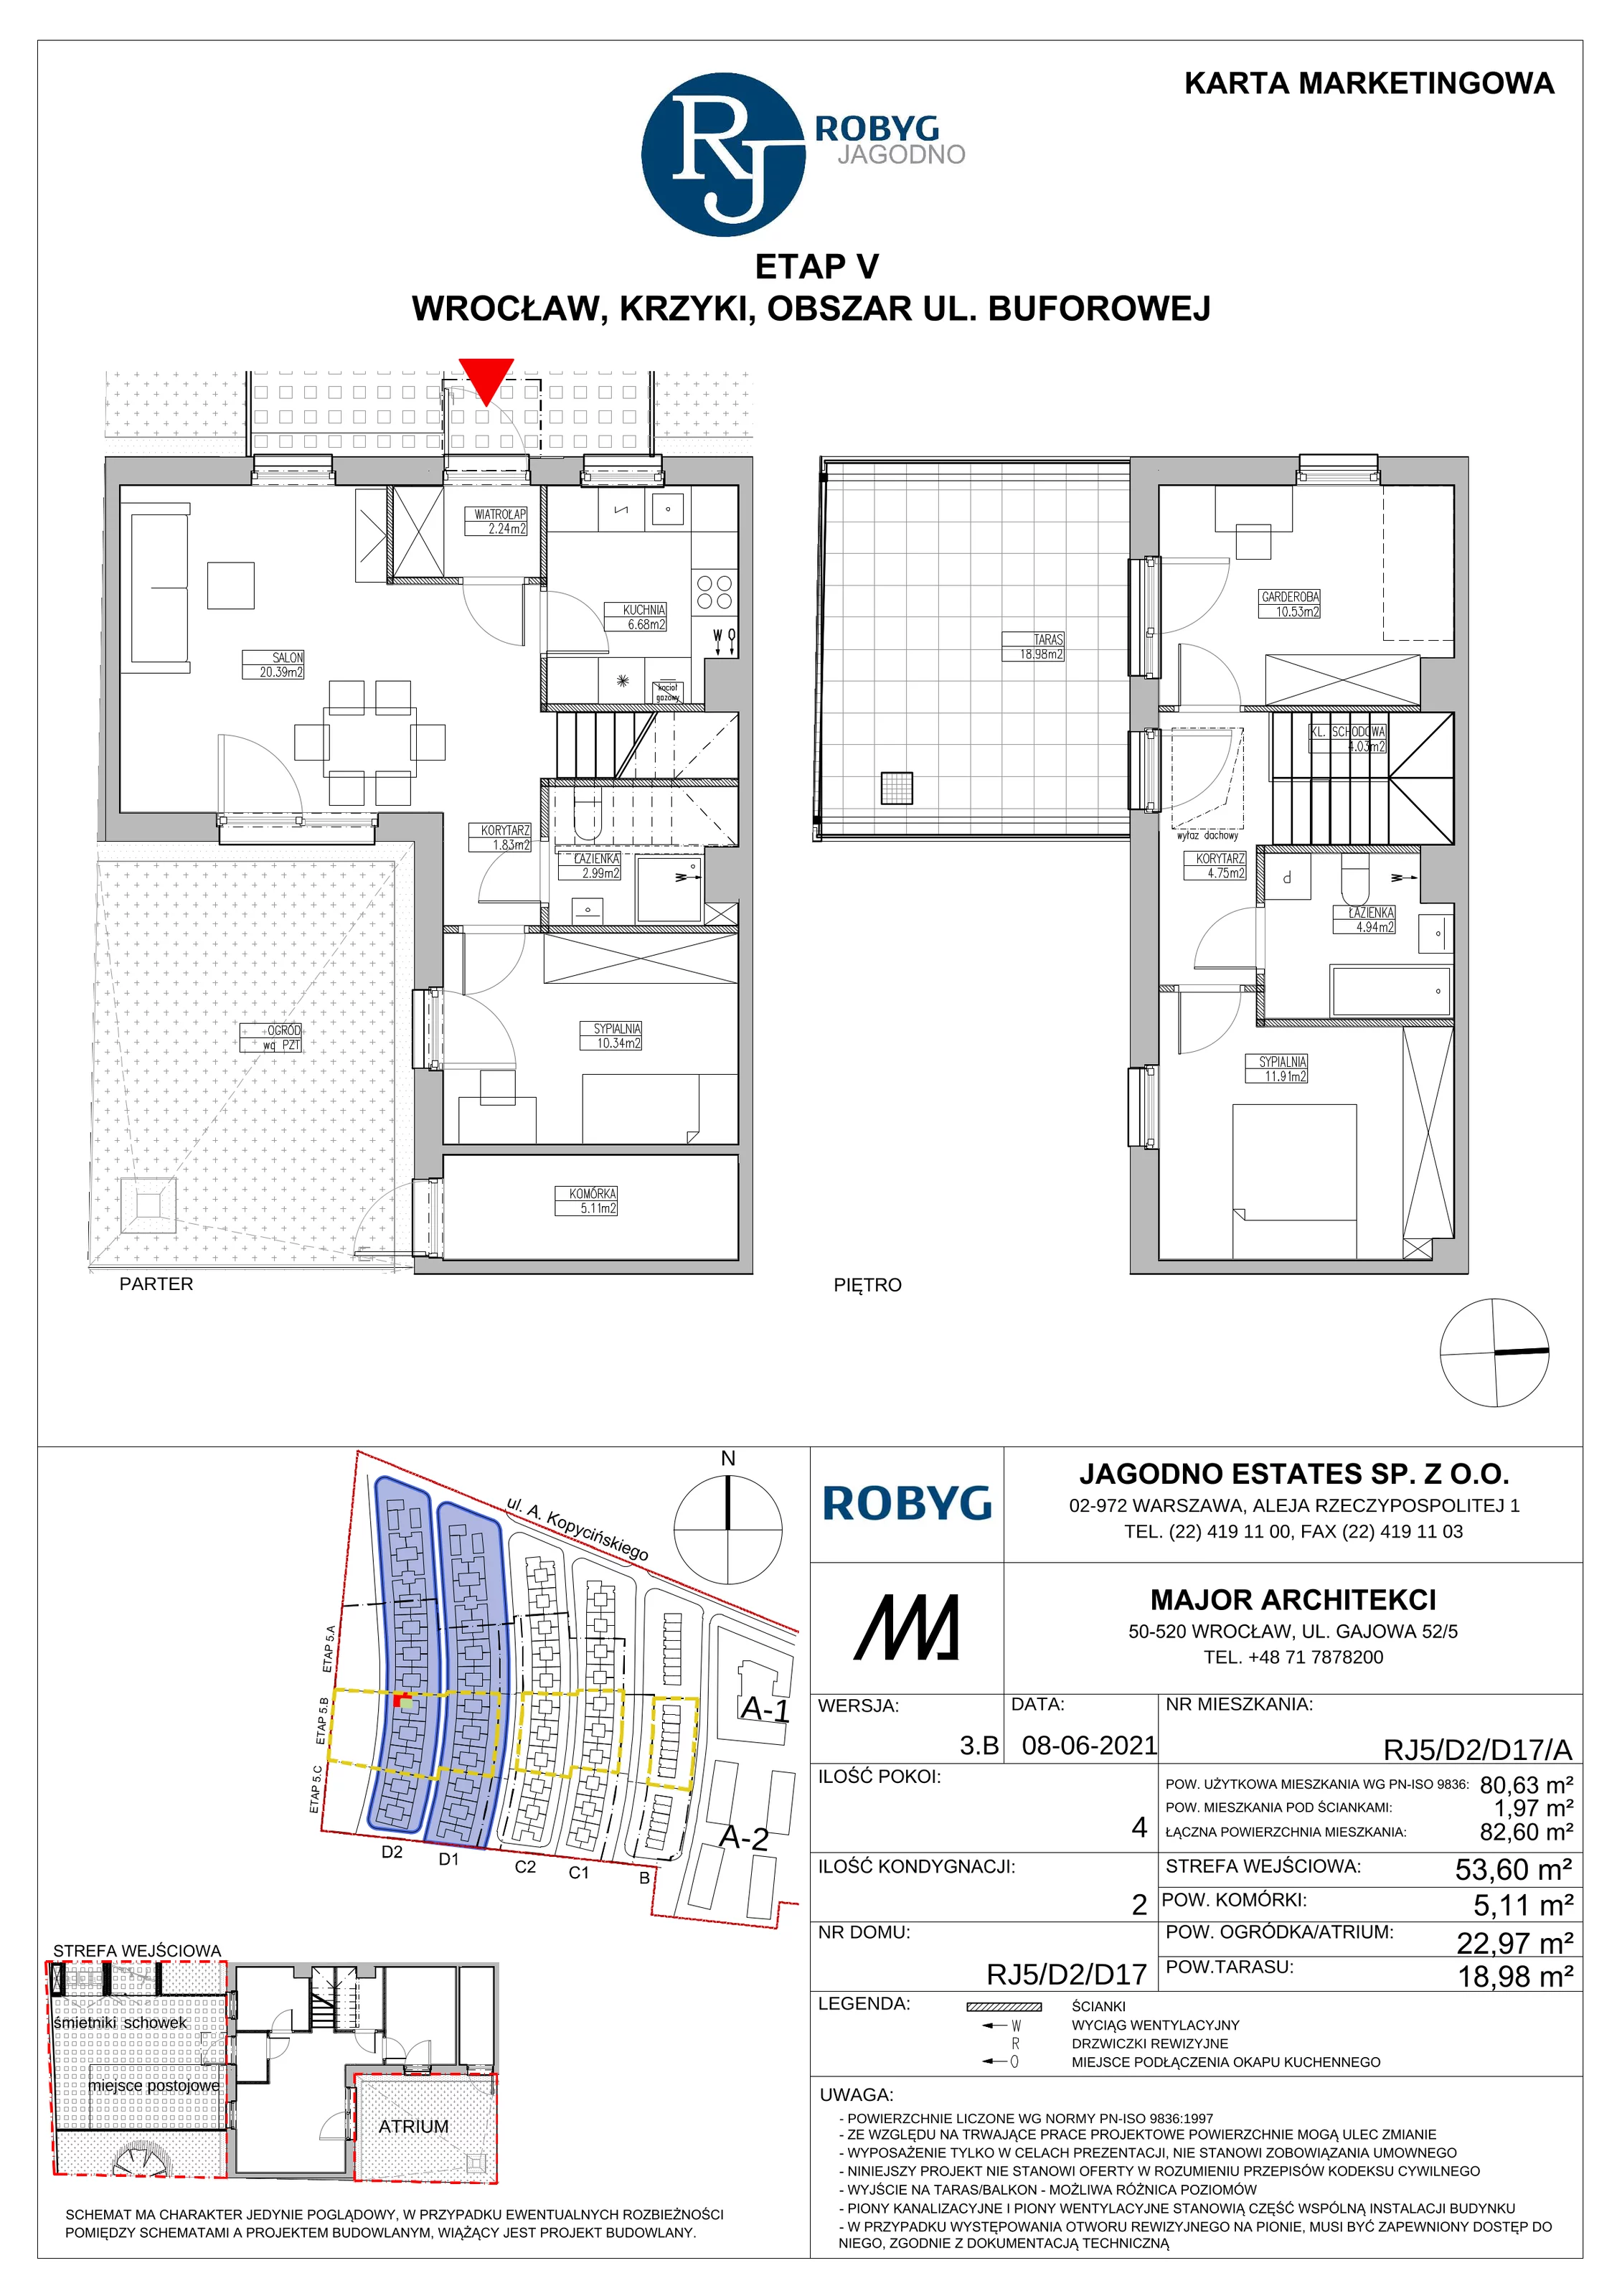 Dom 80,63 m², oferta nr RJ5/D2/D17/A, Robyg Jagodno, Wrocław, Jagodno, Krzyki, ul. Kopycińskiego